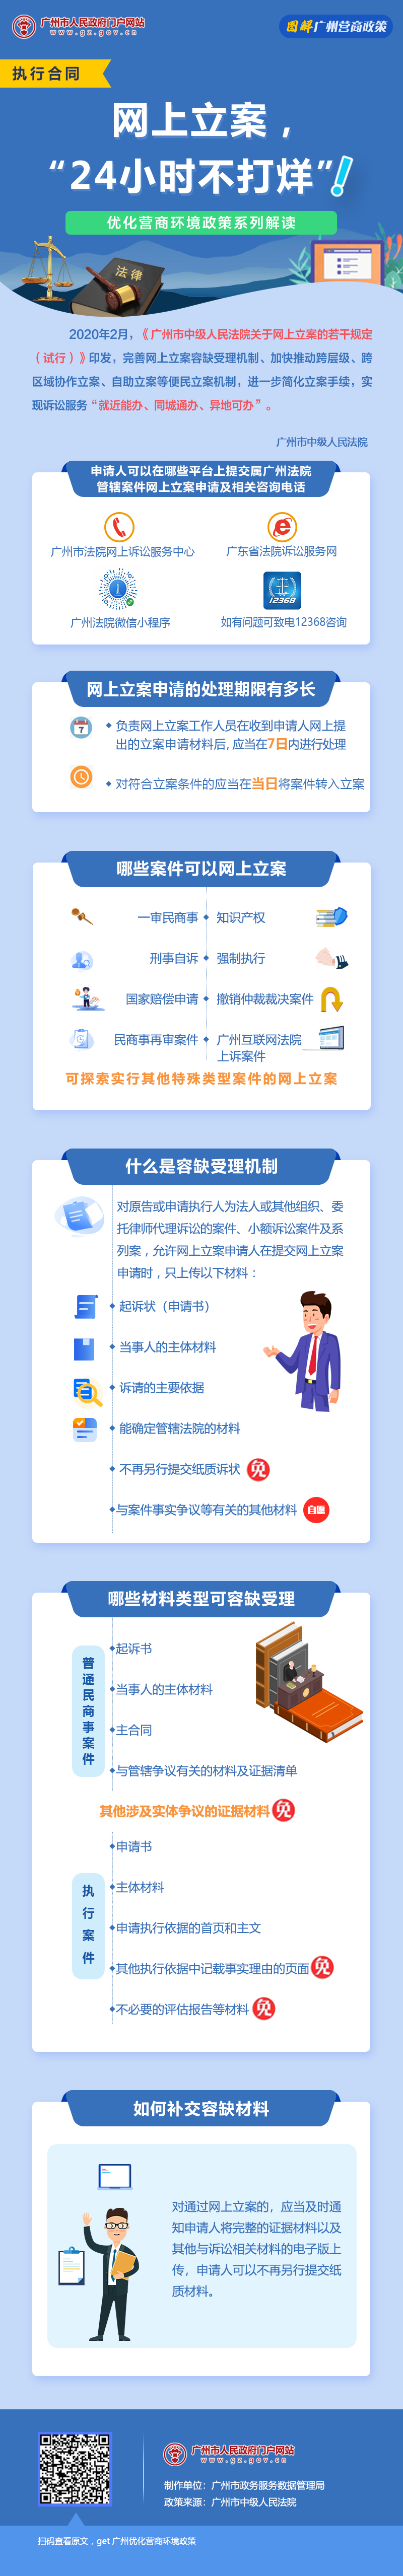 15广州市中级人民法院关于网上立案的若干规定.jpg